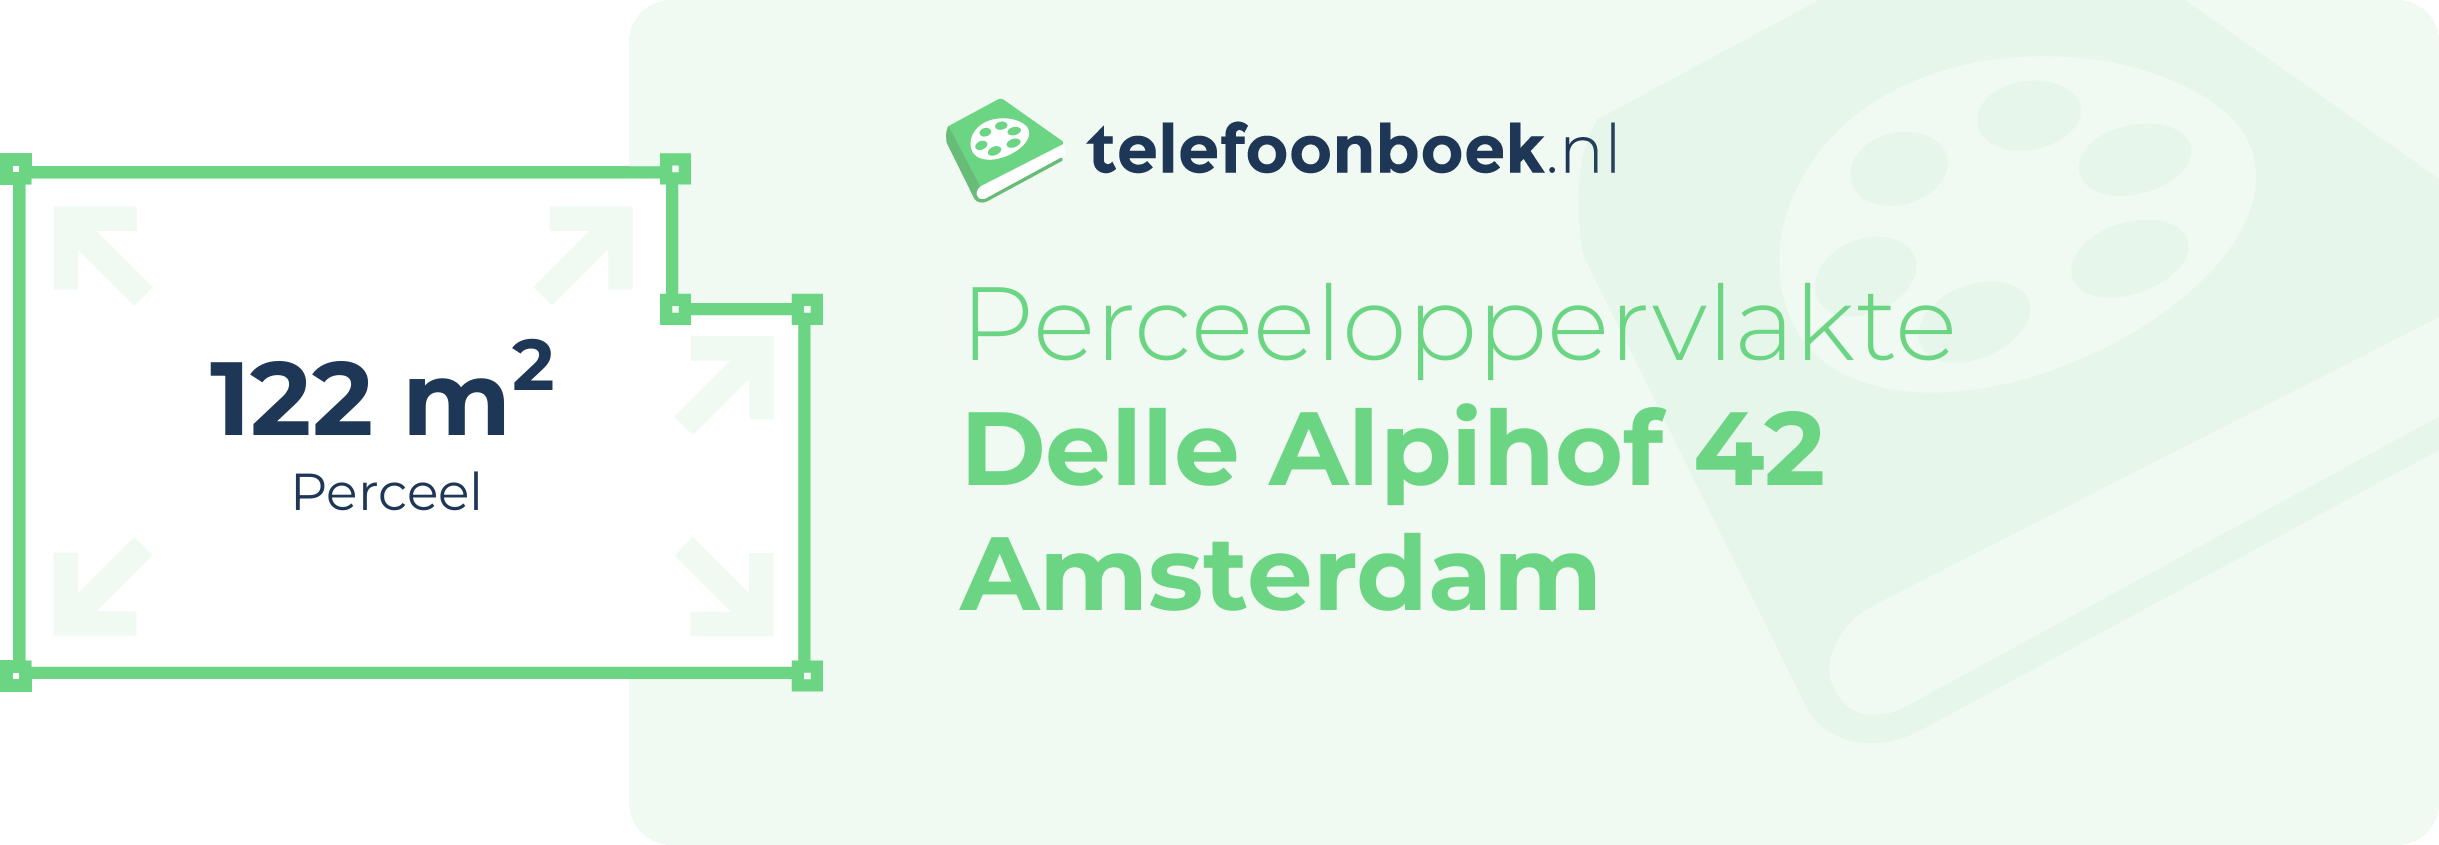 Perceeloppervlakte Delle Alpihof 42 Amsterdam